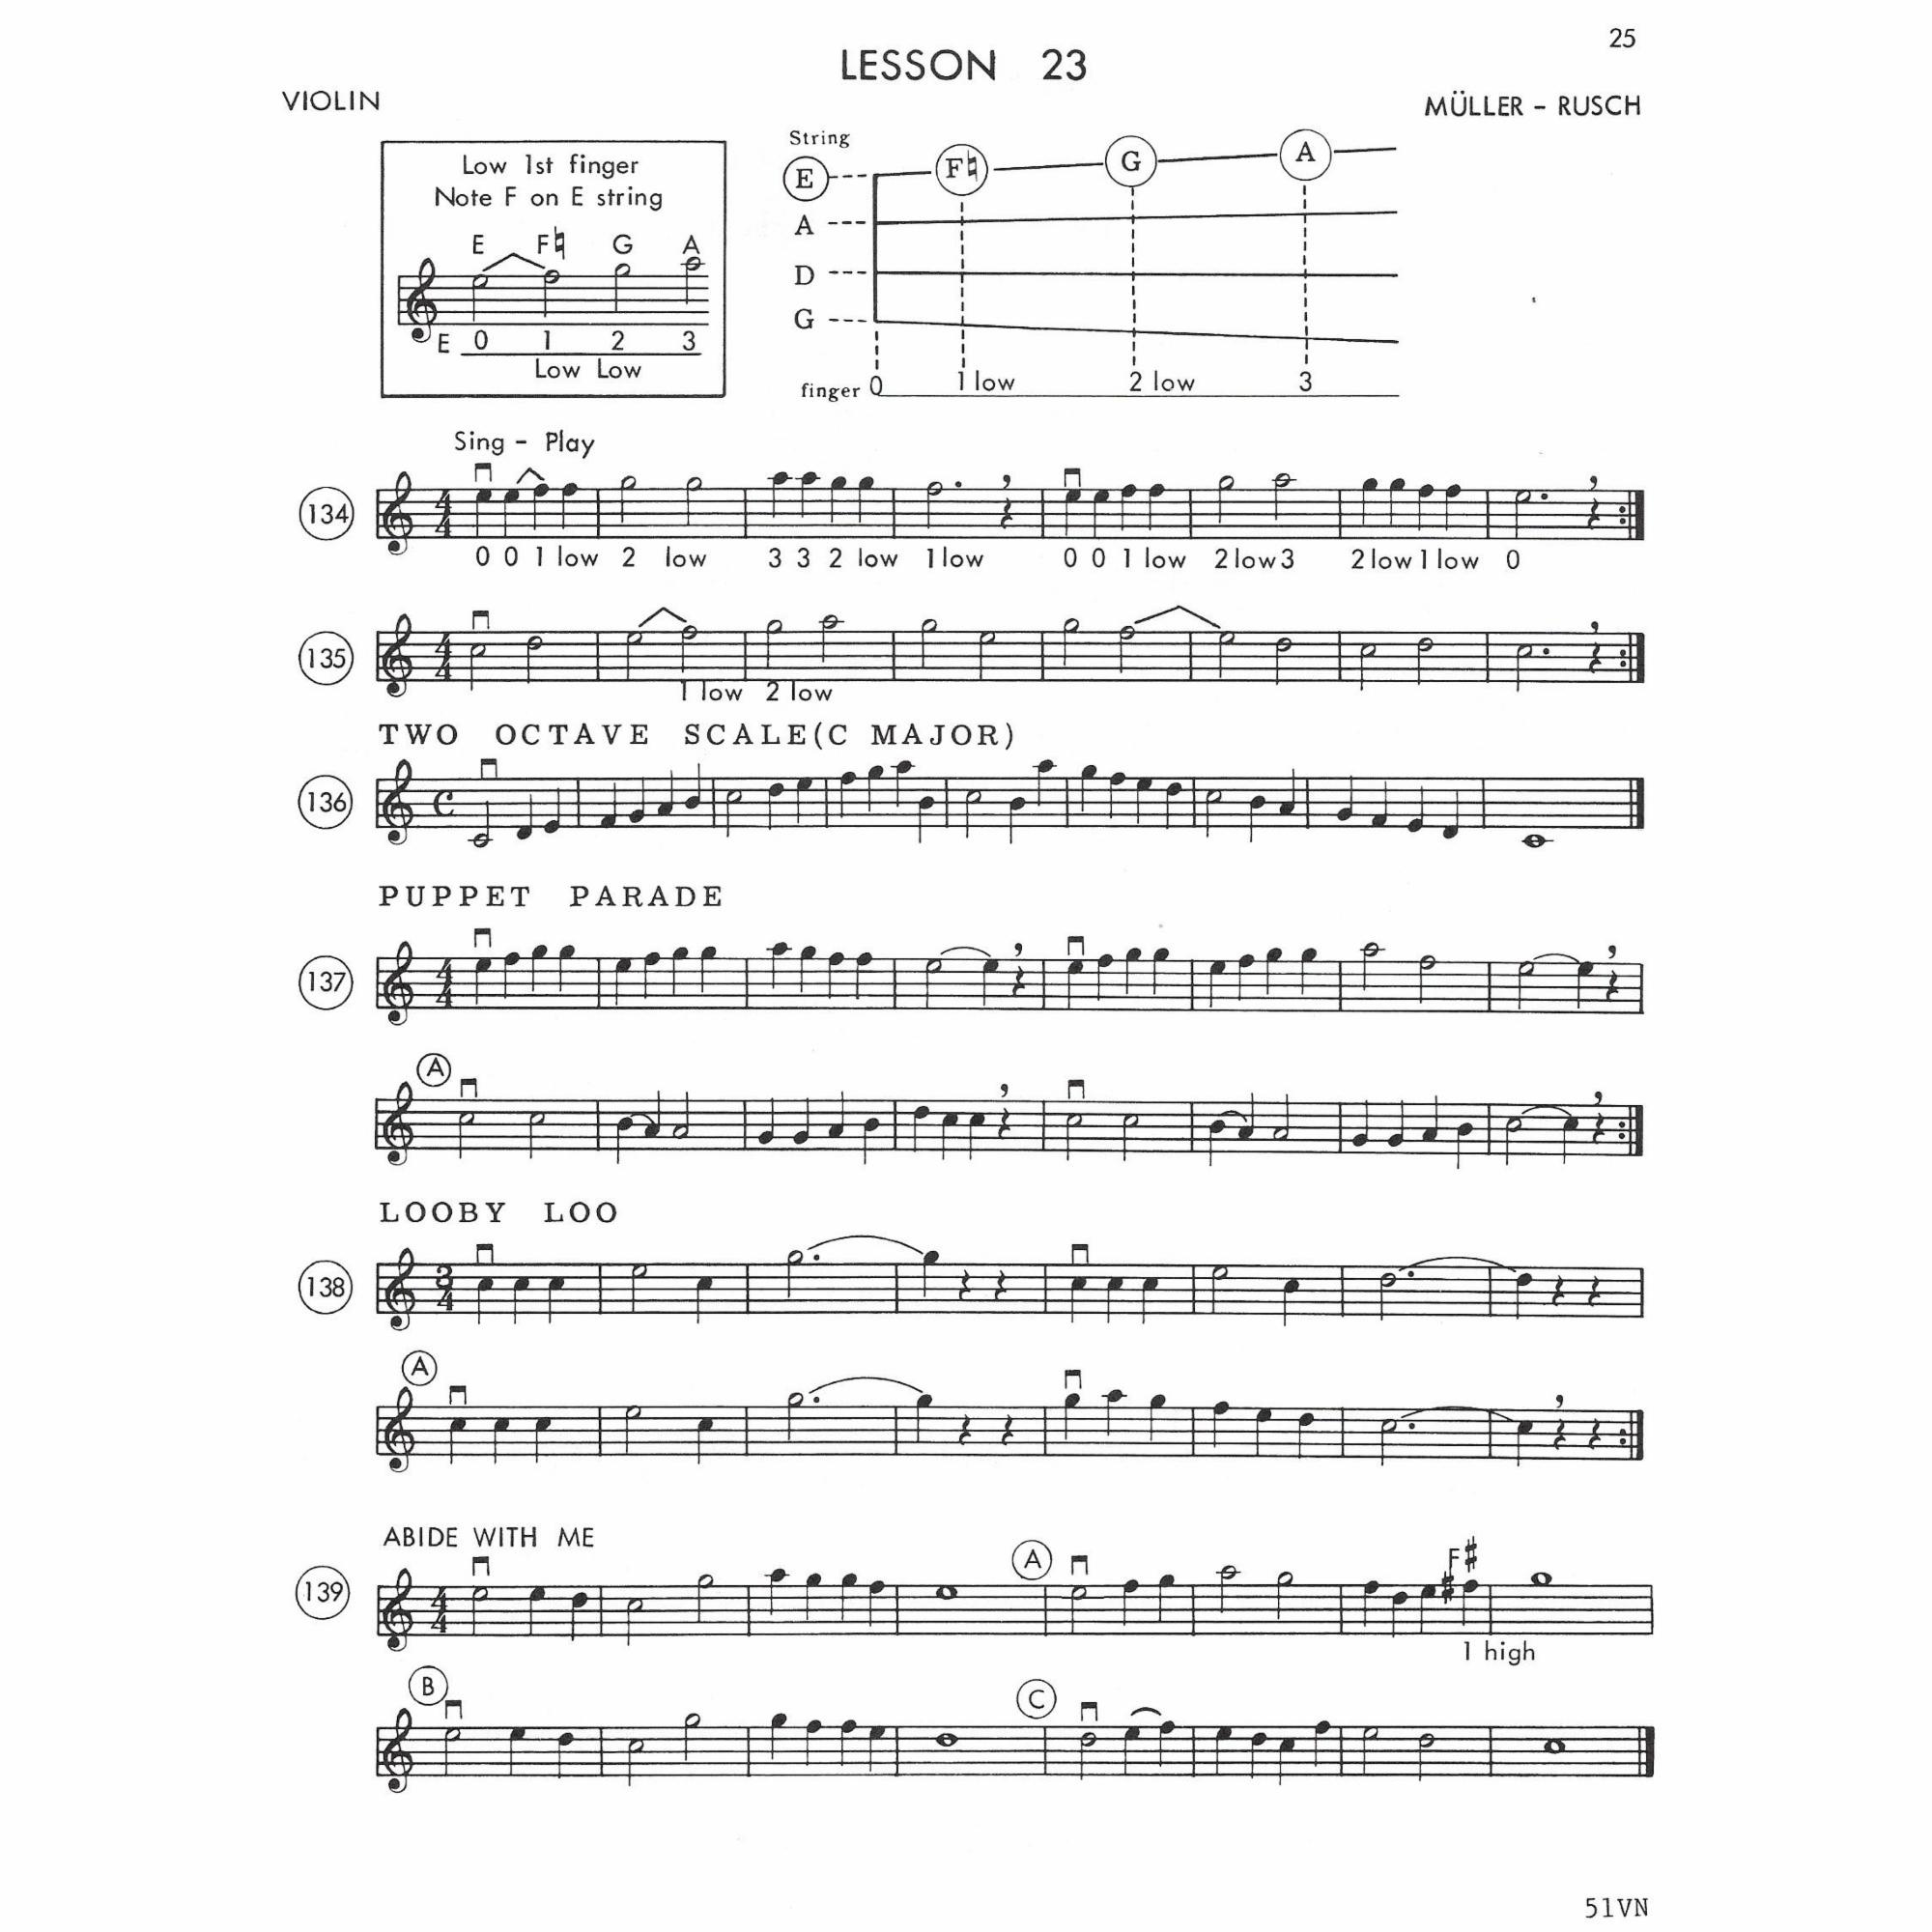 Sample: Violin (Pg. 25)